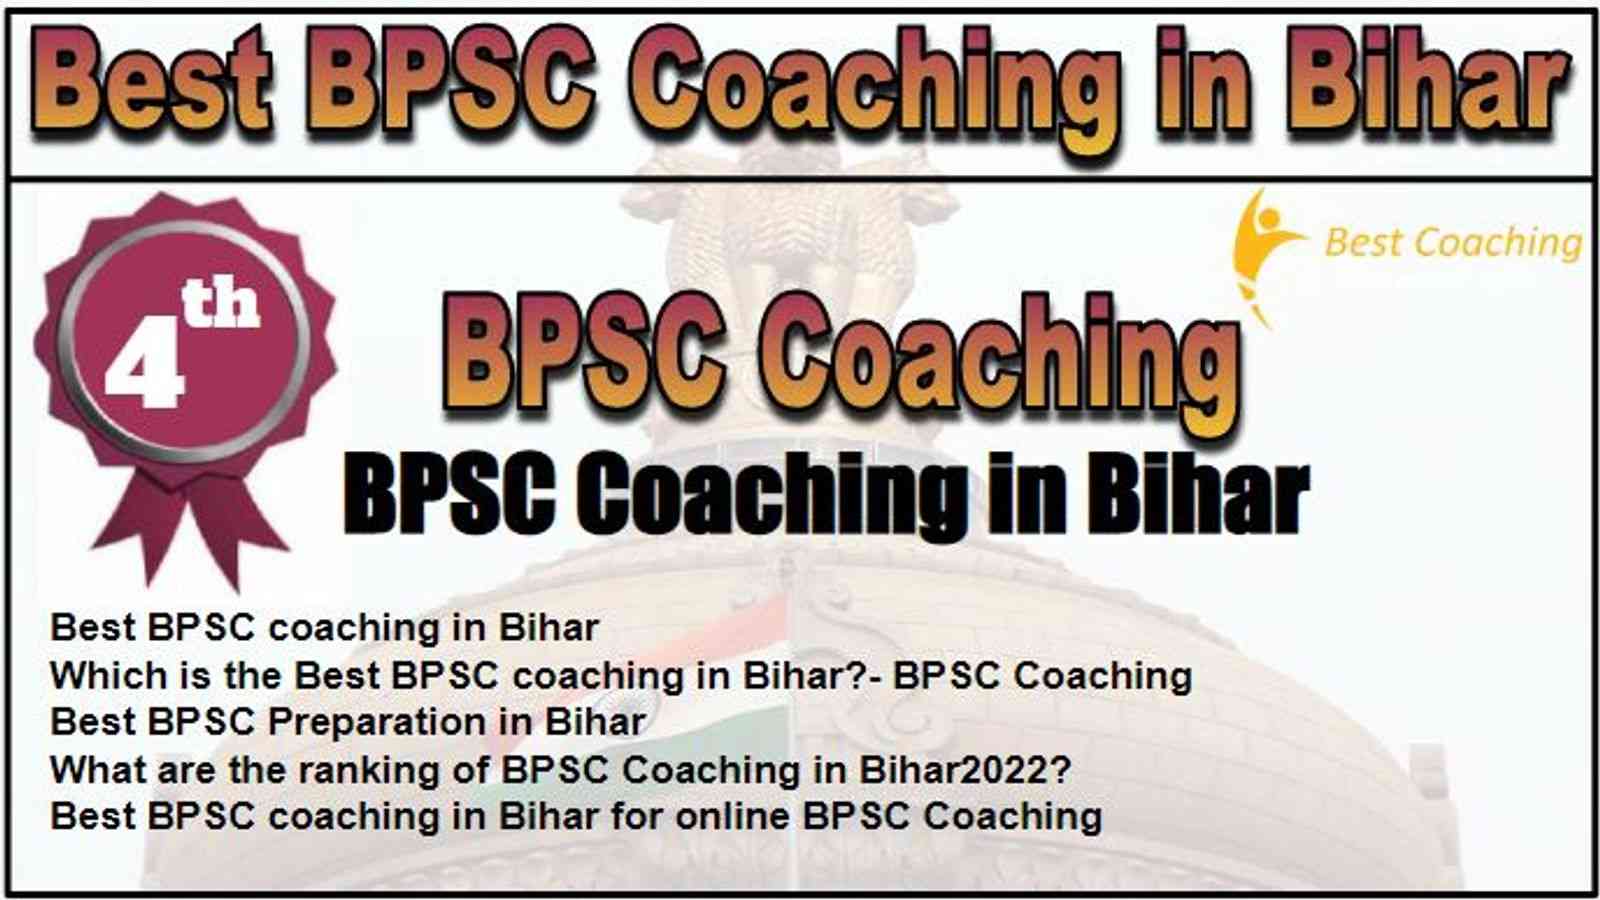 Rank 4 Best BPSC Coaching in Bihar